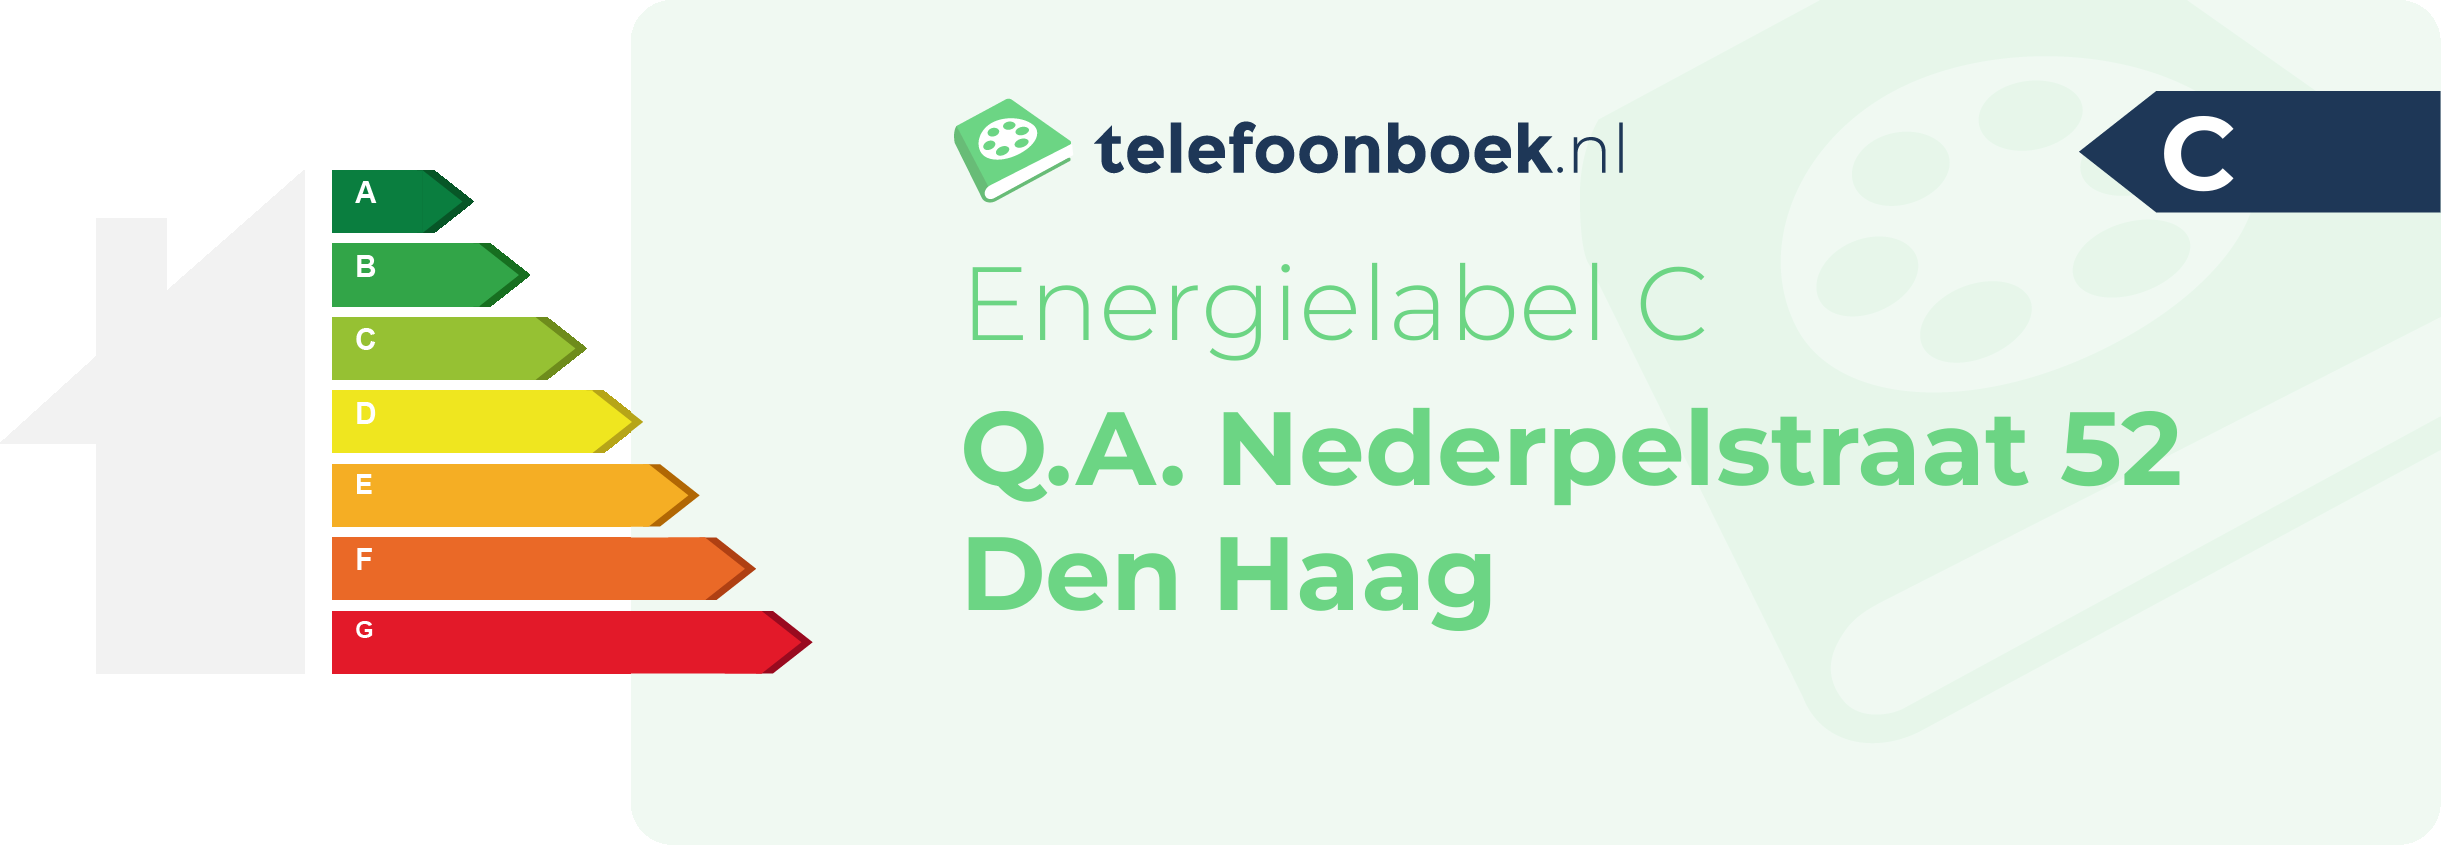 Energielabel Q.A. Nederpelstraat 52 Den Haag